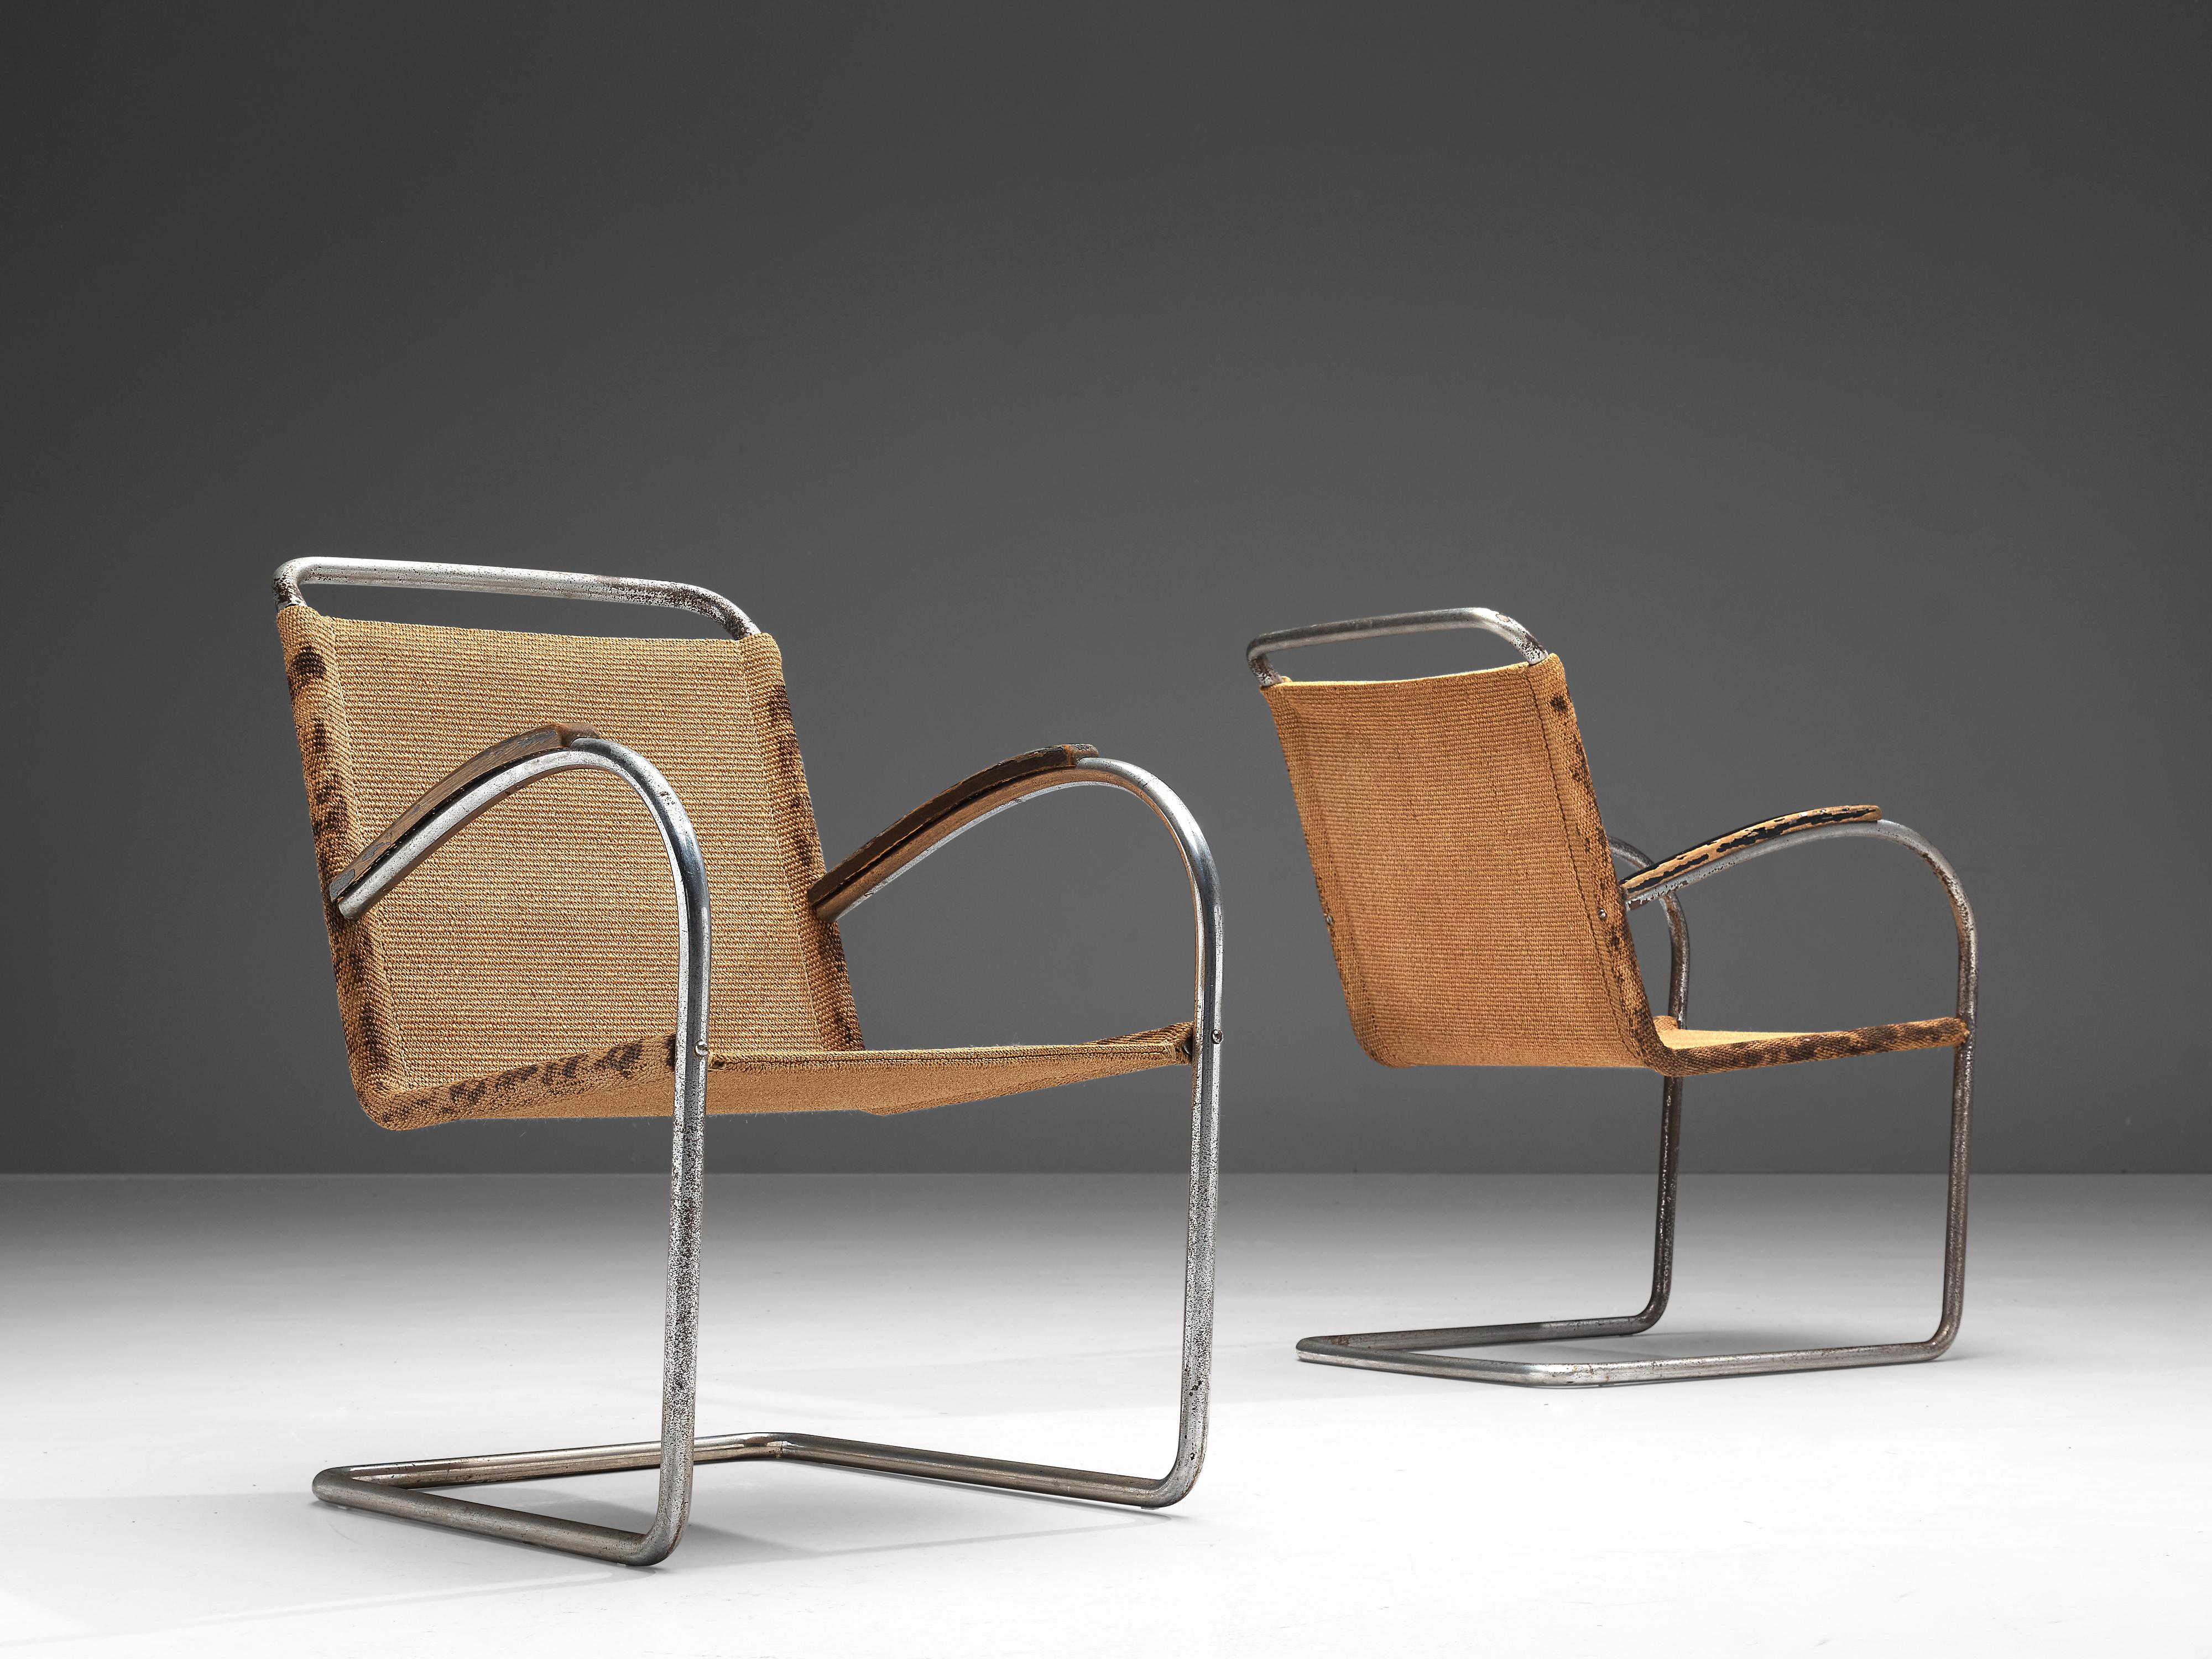 Bas van Pelt für E.M.S. Overschie, Paar Sessel, verchromter Stahl, Sisal, lackiertes Holz, Niederlande, 1930er Jahre.

Diese originalen bequemen Stühle stammen von dem niederländischen Innenarchitekten und Möbeldesigner Bas van Pelt (1900-1945) und